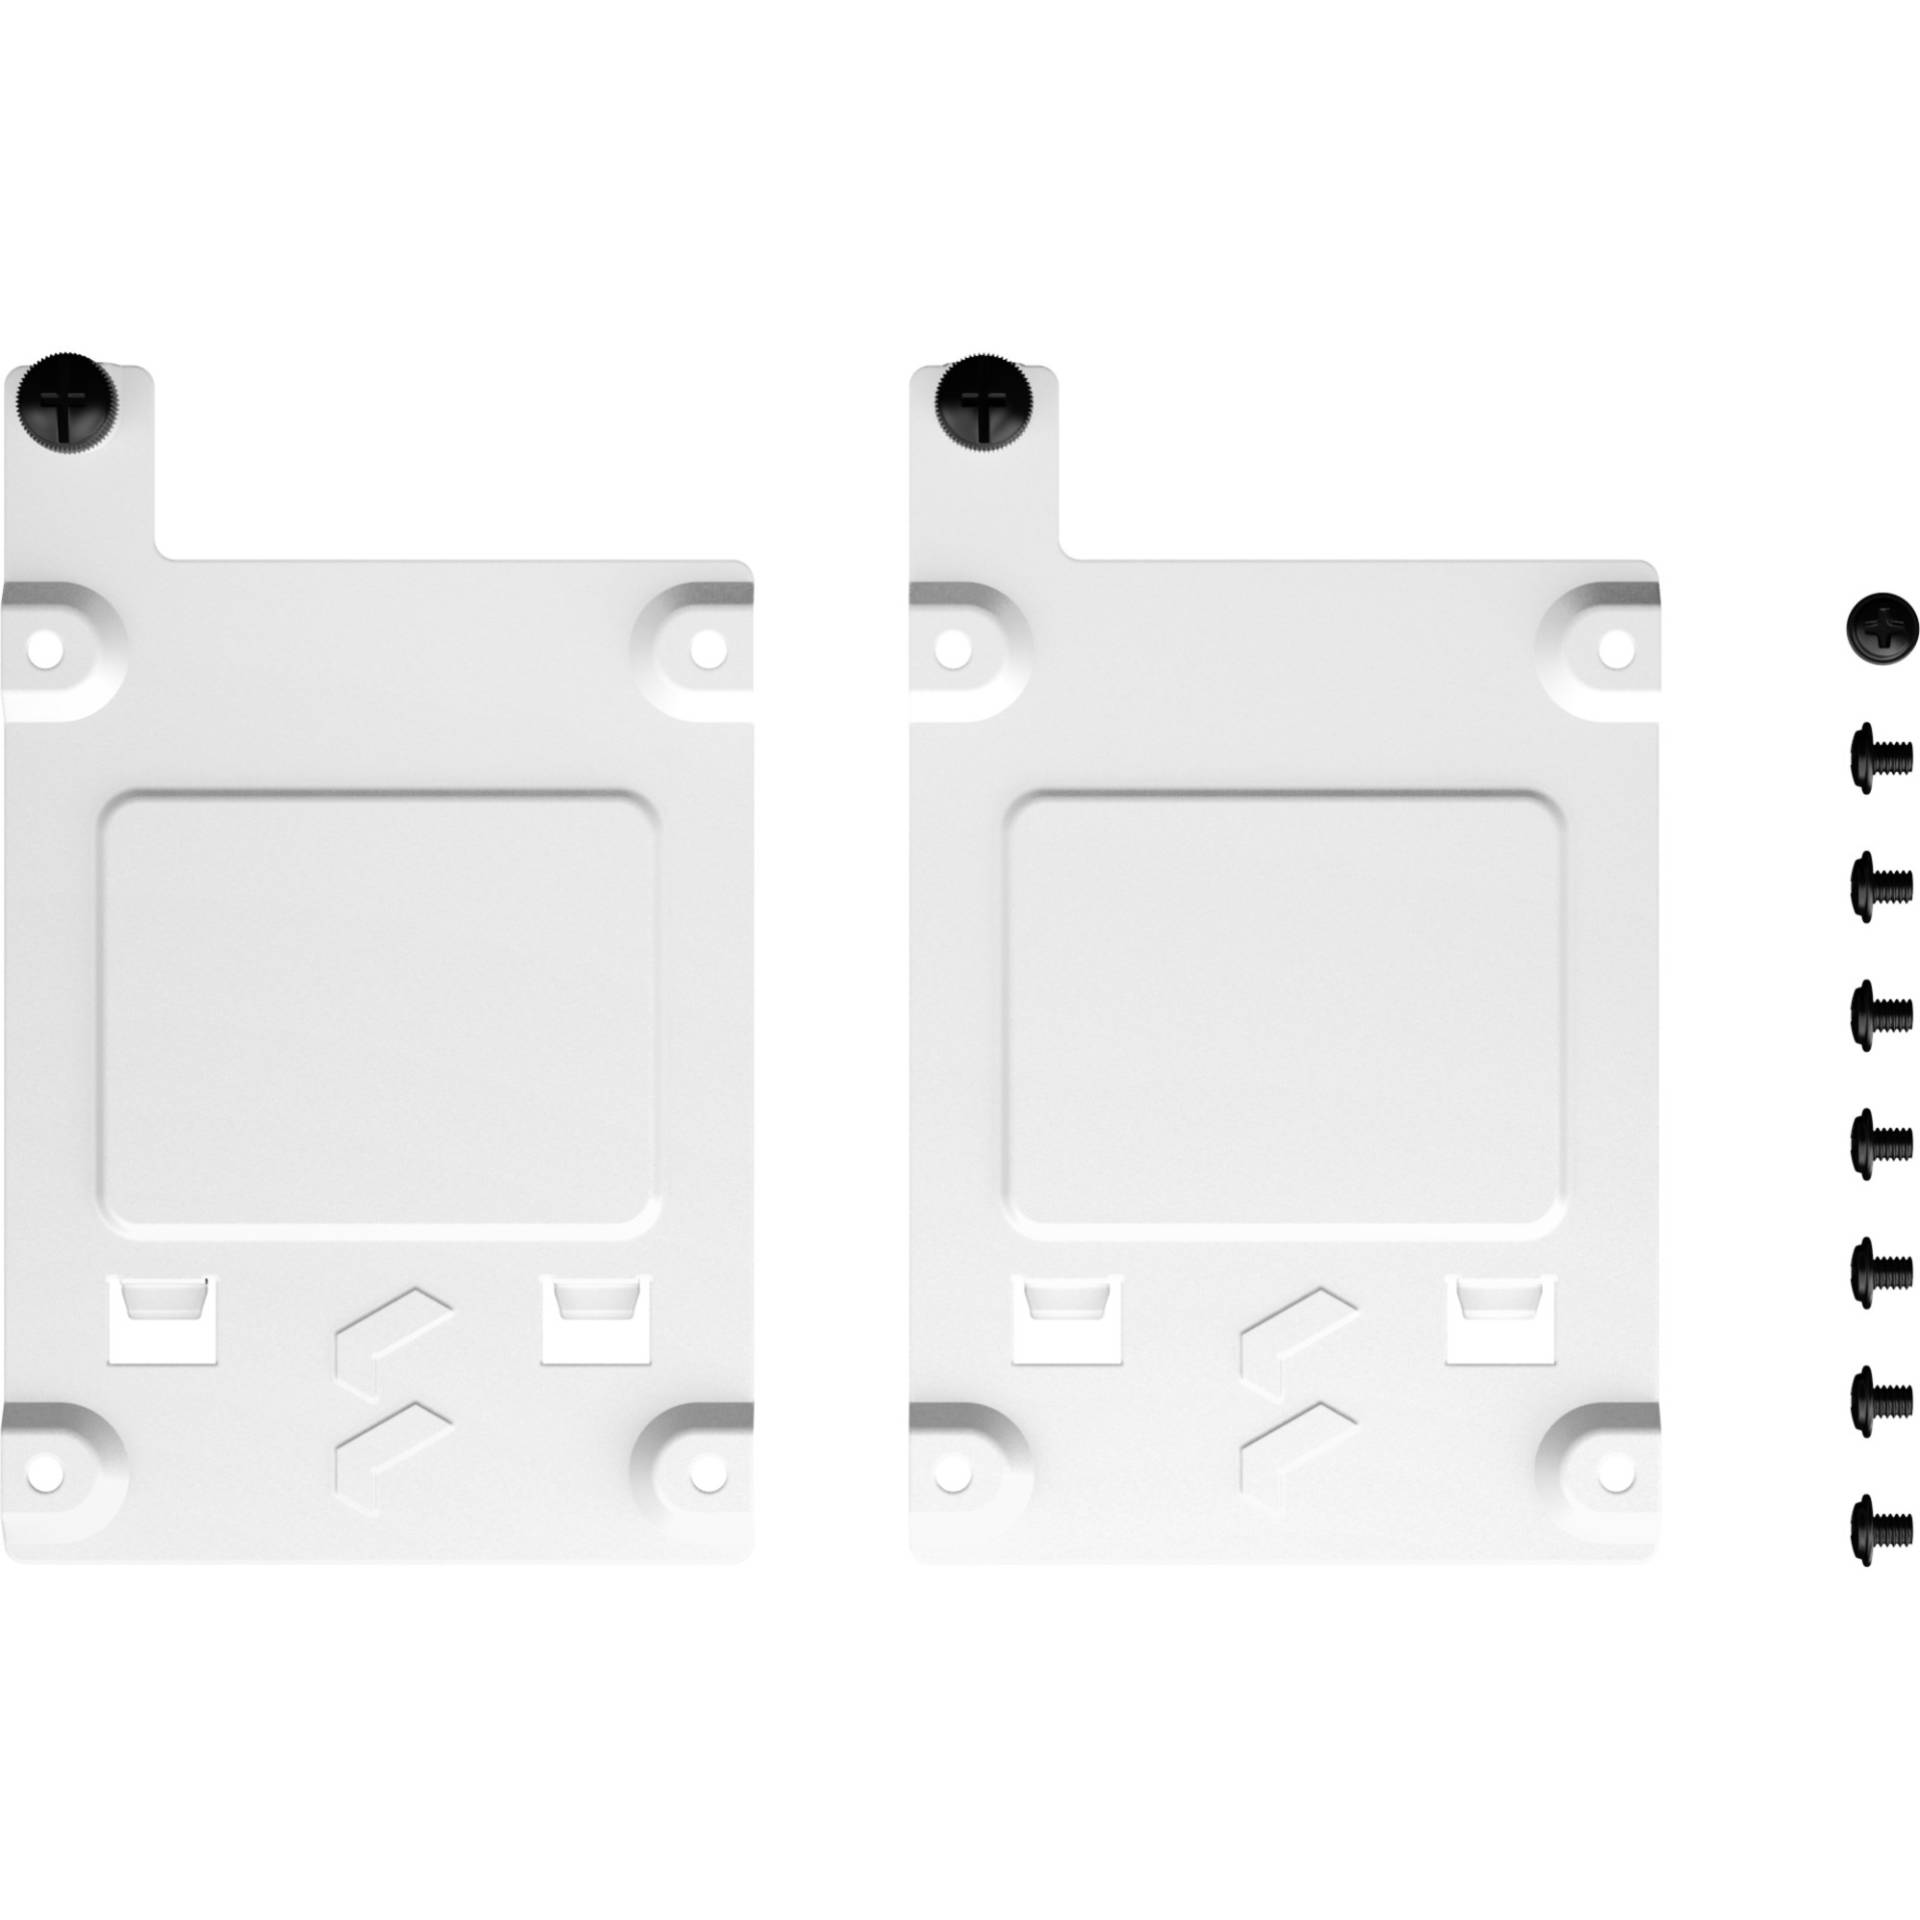 SSD Tray kit - Type-B (2-pack), Einbaurahmen von Fractal Design